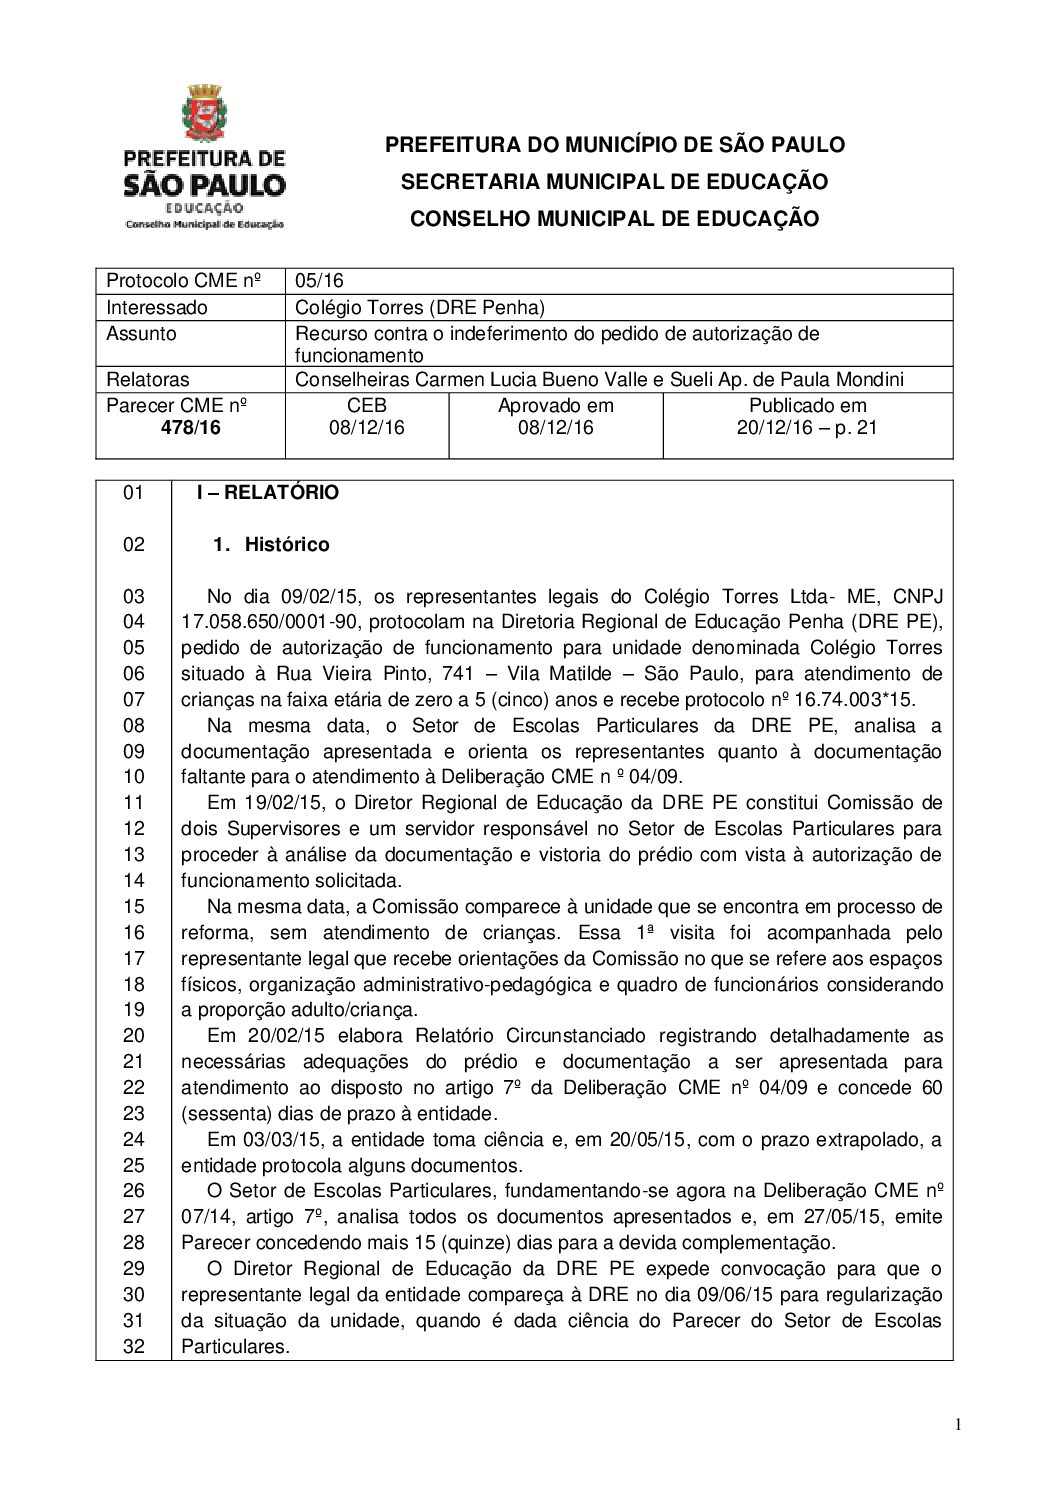 Parecer CME nº 478/2016 - Colégio Torres (DRE Penha) - Recurso contra o indeferimento do pedido de autorização de funcionamento